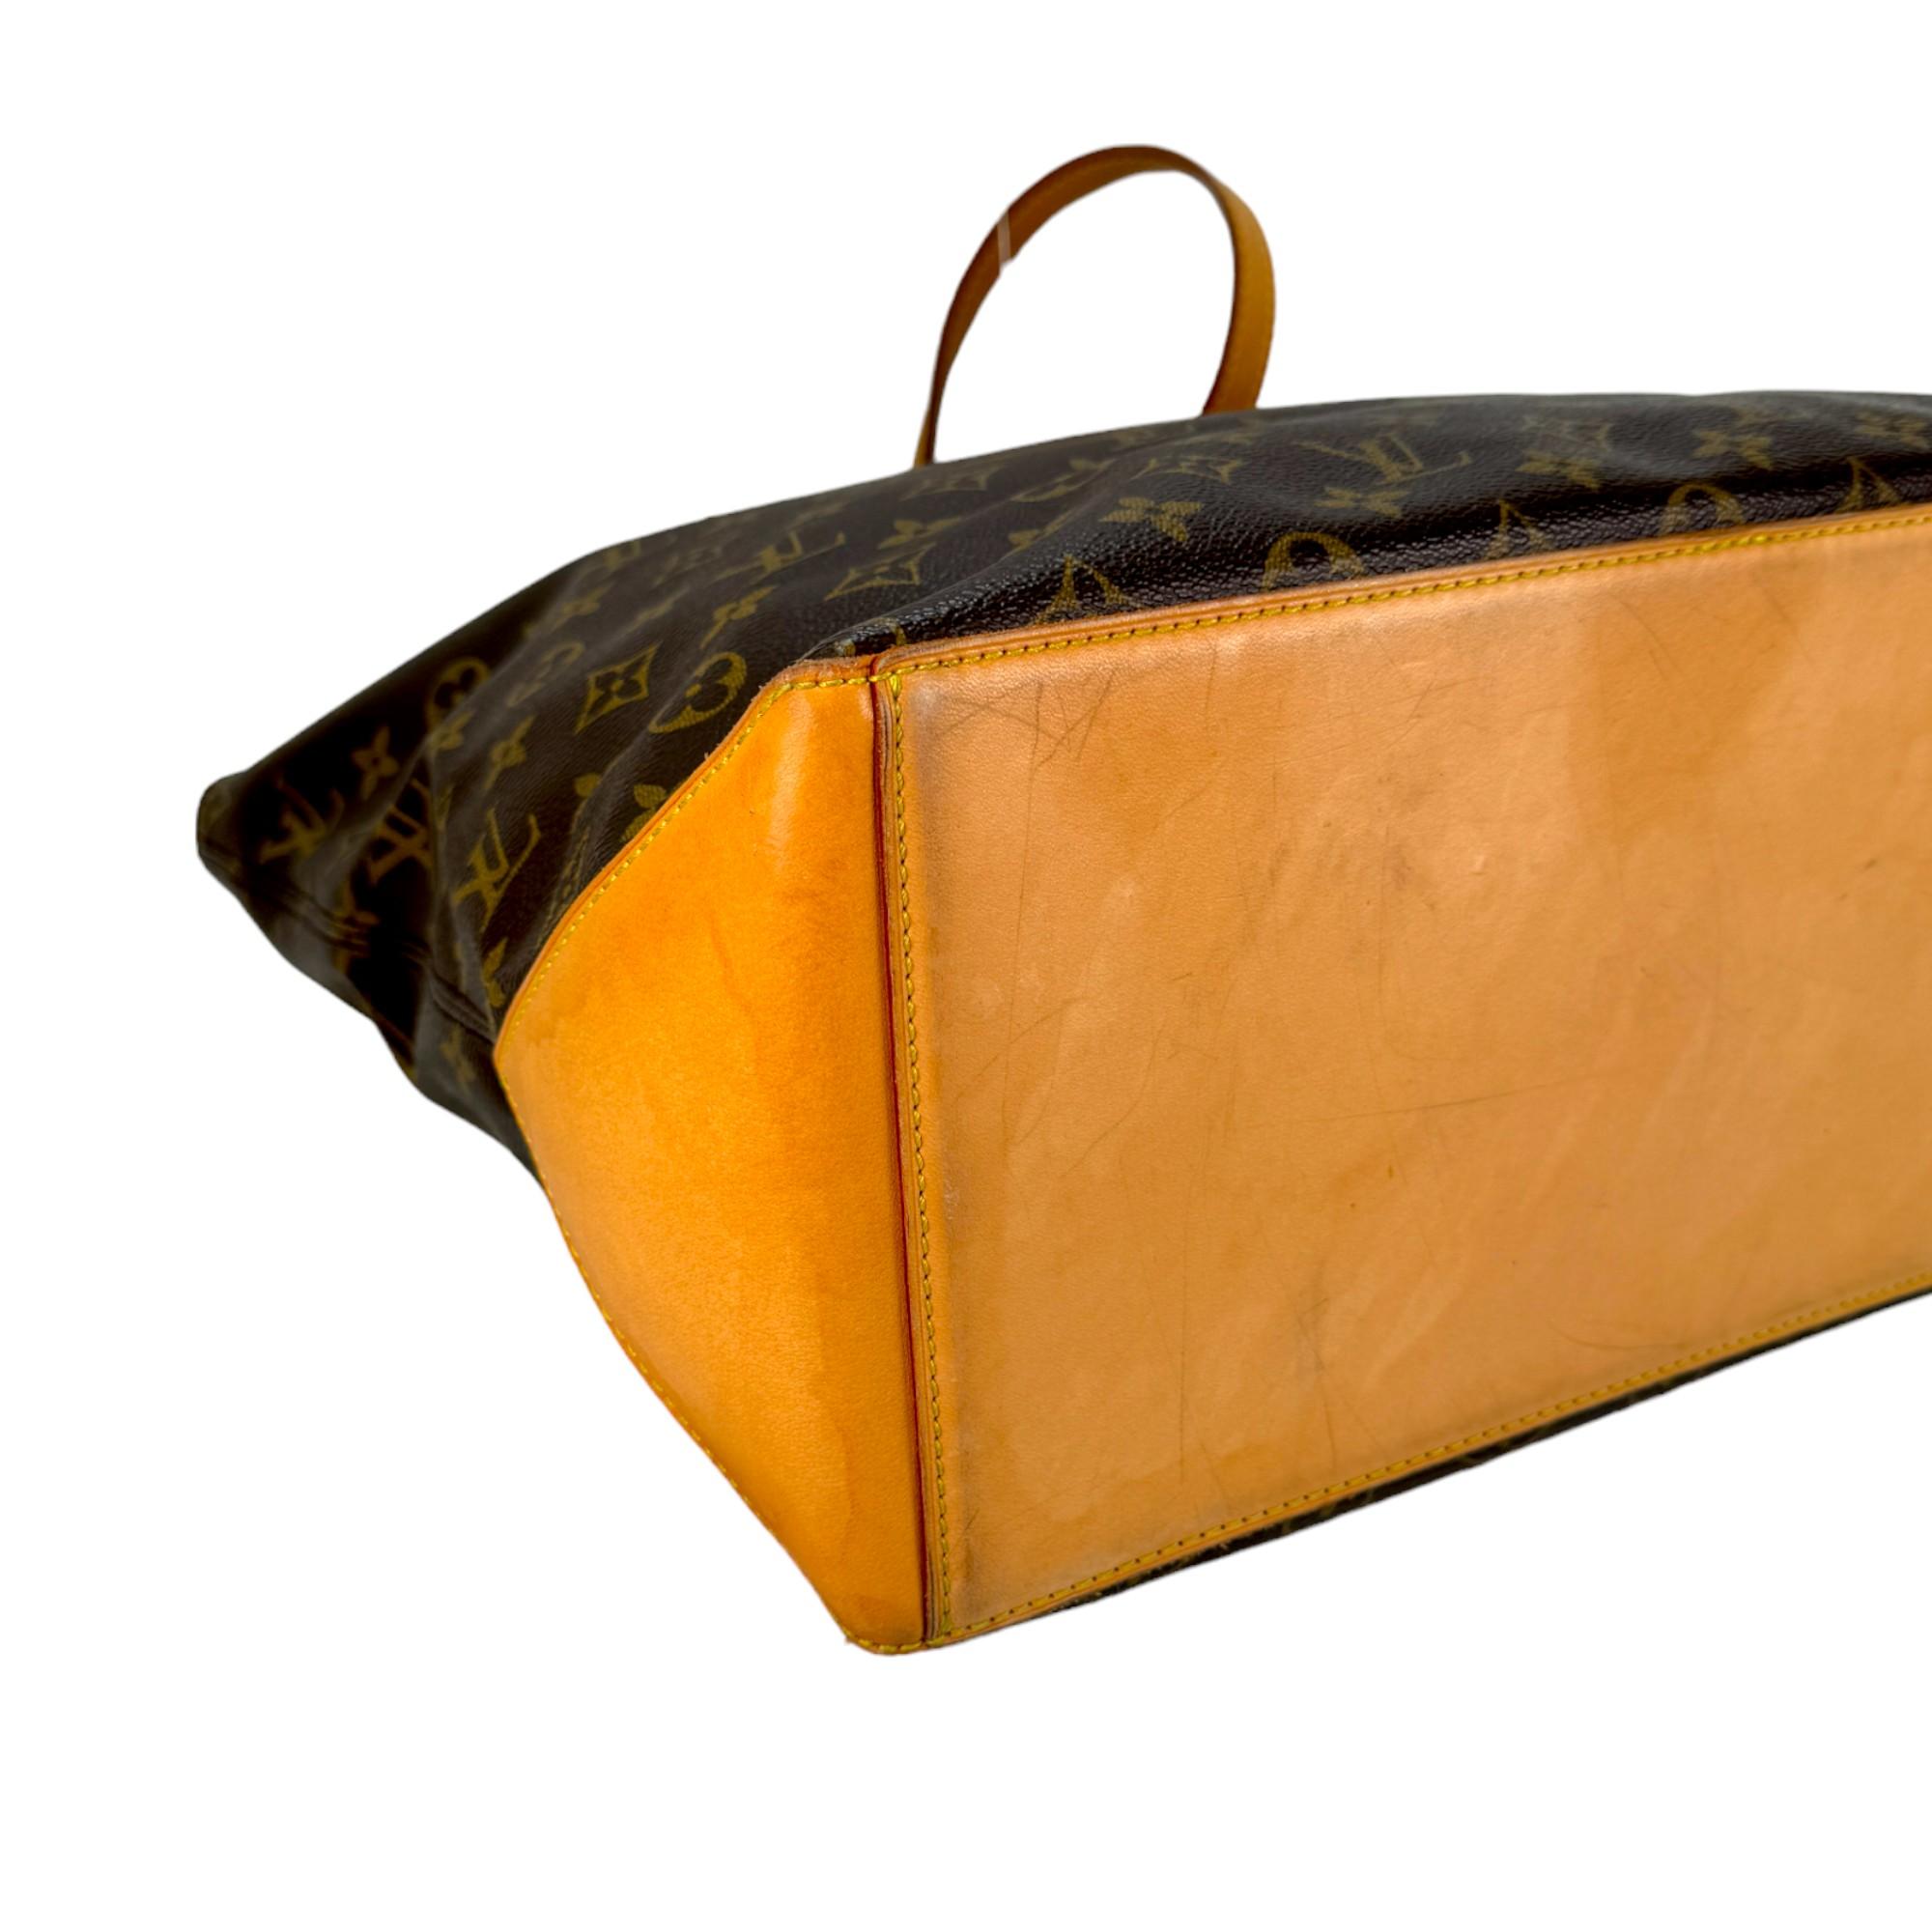 Authentic estate Louis Vuitton Monogram Cabas Mezzo shoulder bag